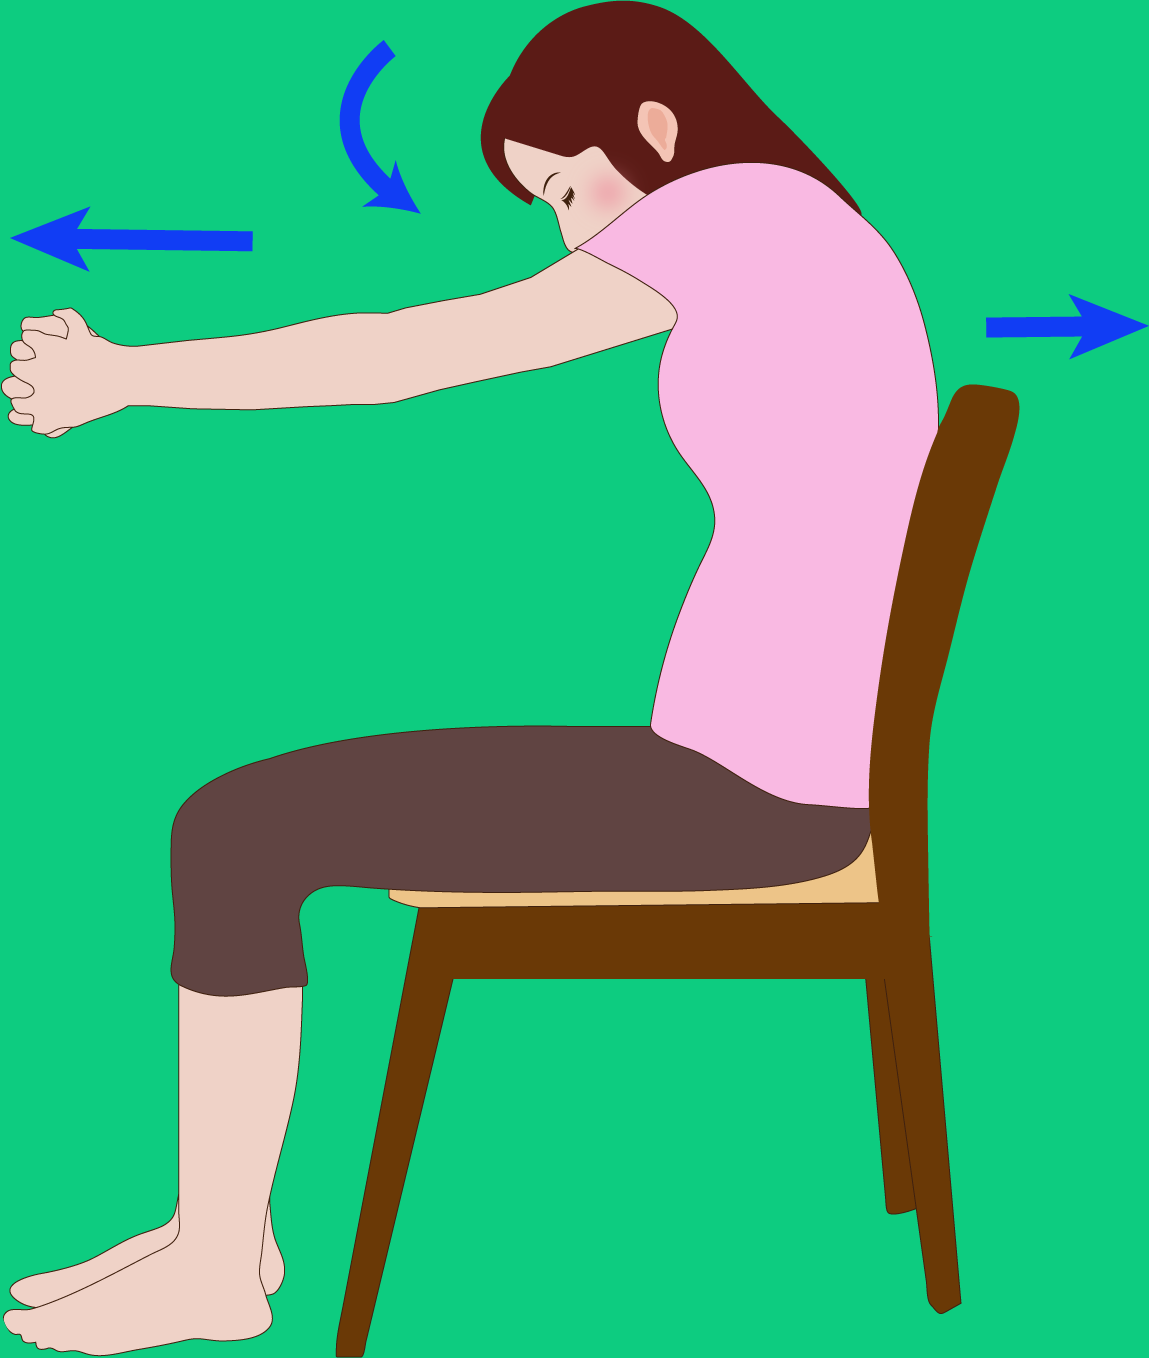 背筋を伸ばしてイスに座る  胸の前で両手を組む  背中を丸めて、組んだ手を前へ伸ばす  ゆっくりと2の姿勢に戻す